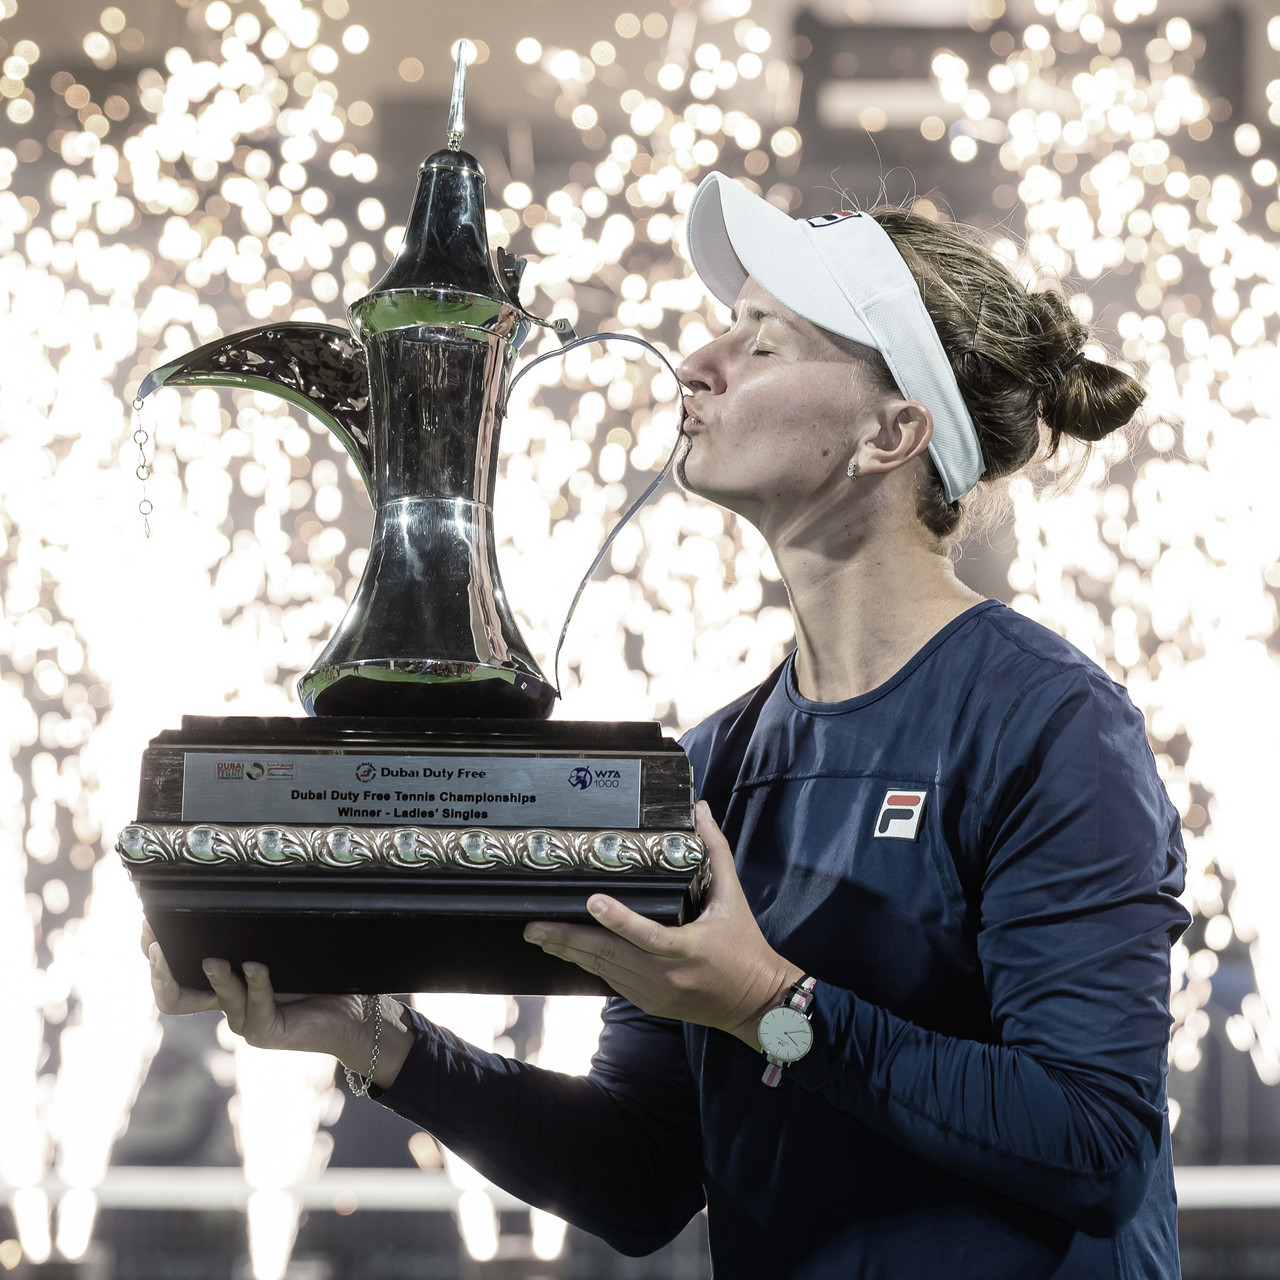 


	
	
	
	




Barbora Krejcikova se
lleva el título de Dubái